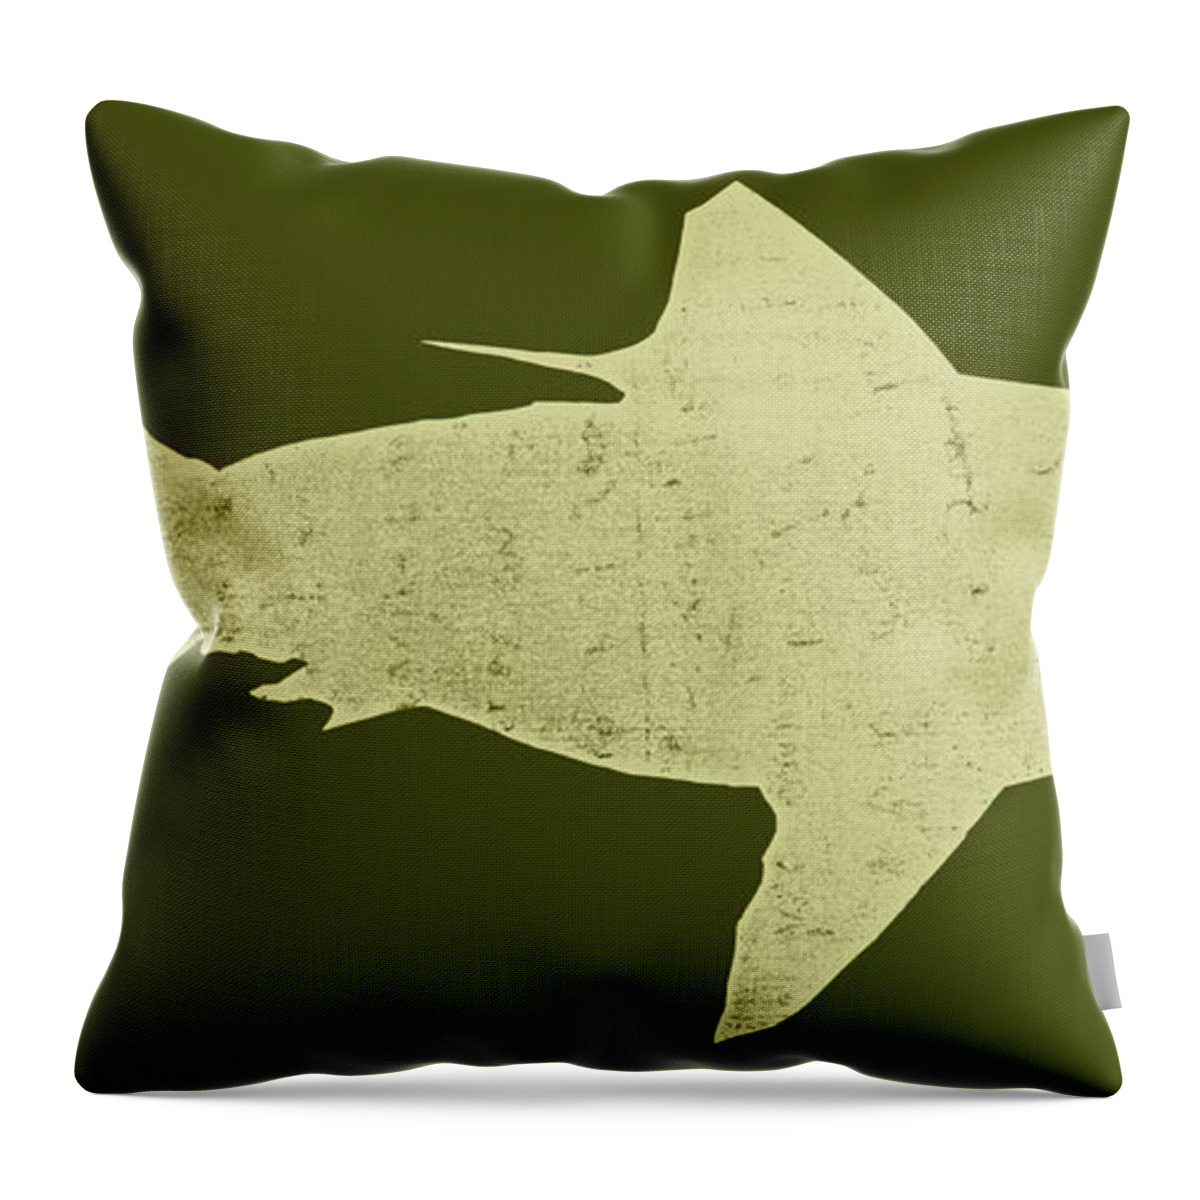 Shark Throw Pillow featuring the digital art Shark by Michelle Calkins